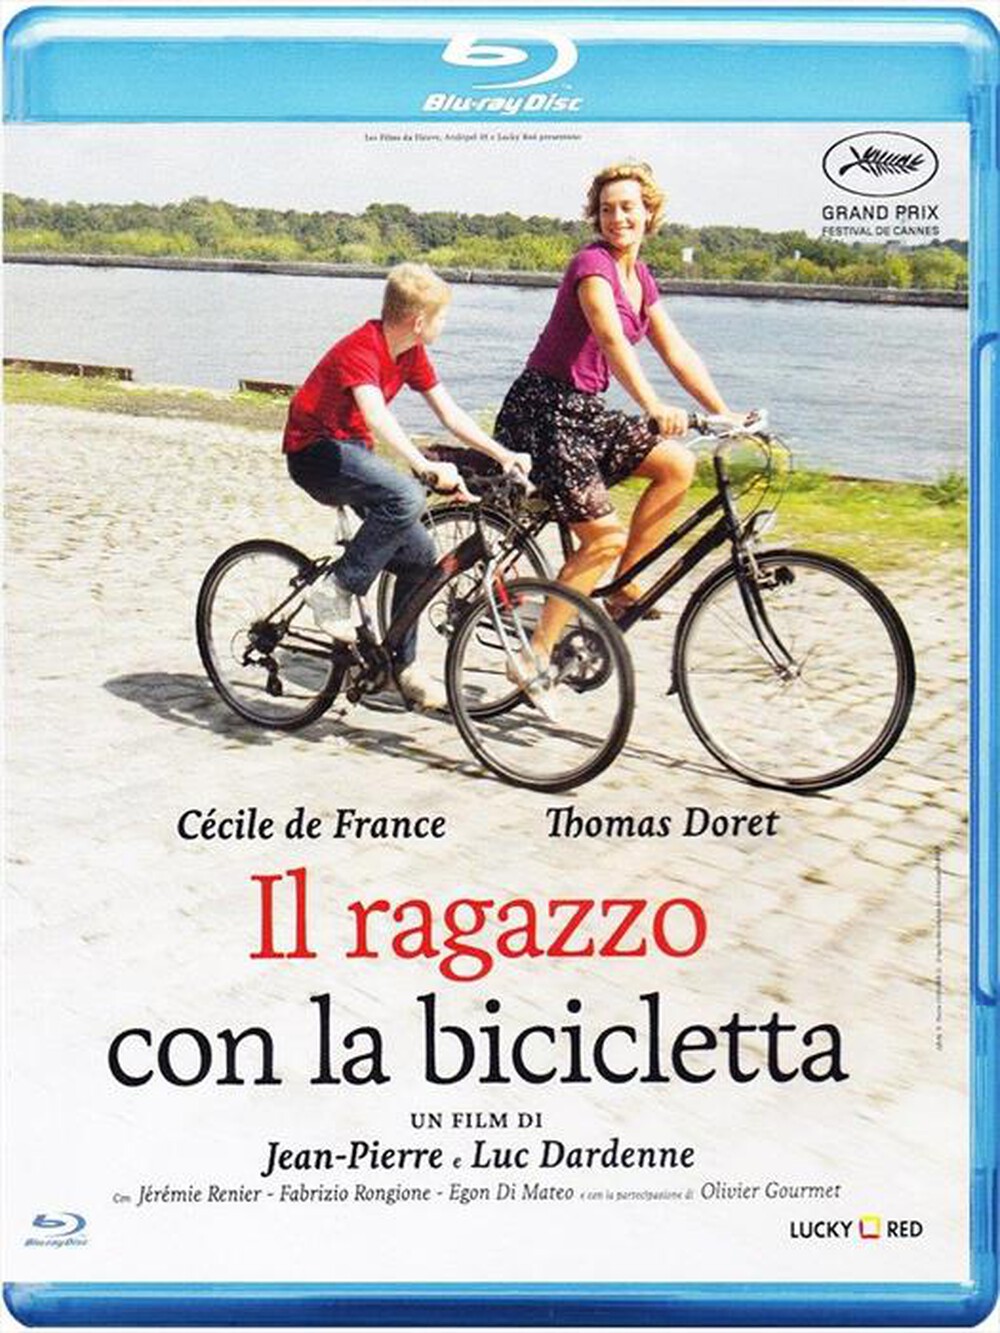 "WARNER HOME VIDEO - Ragazzo Con La Bicicletta (Il)"